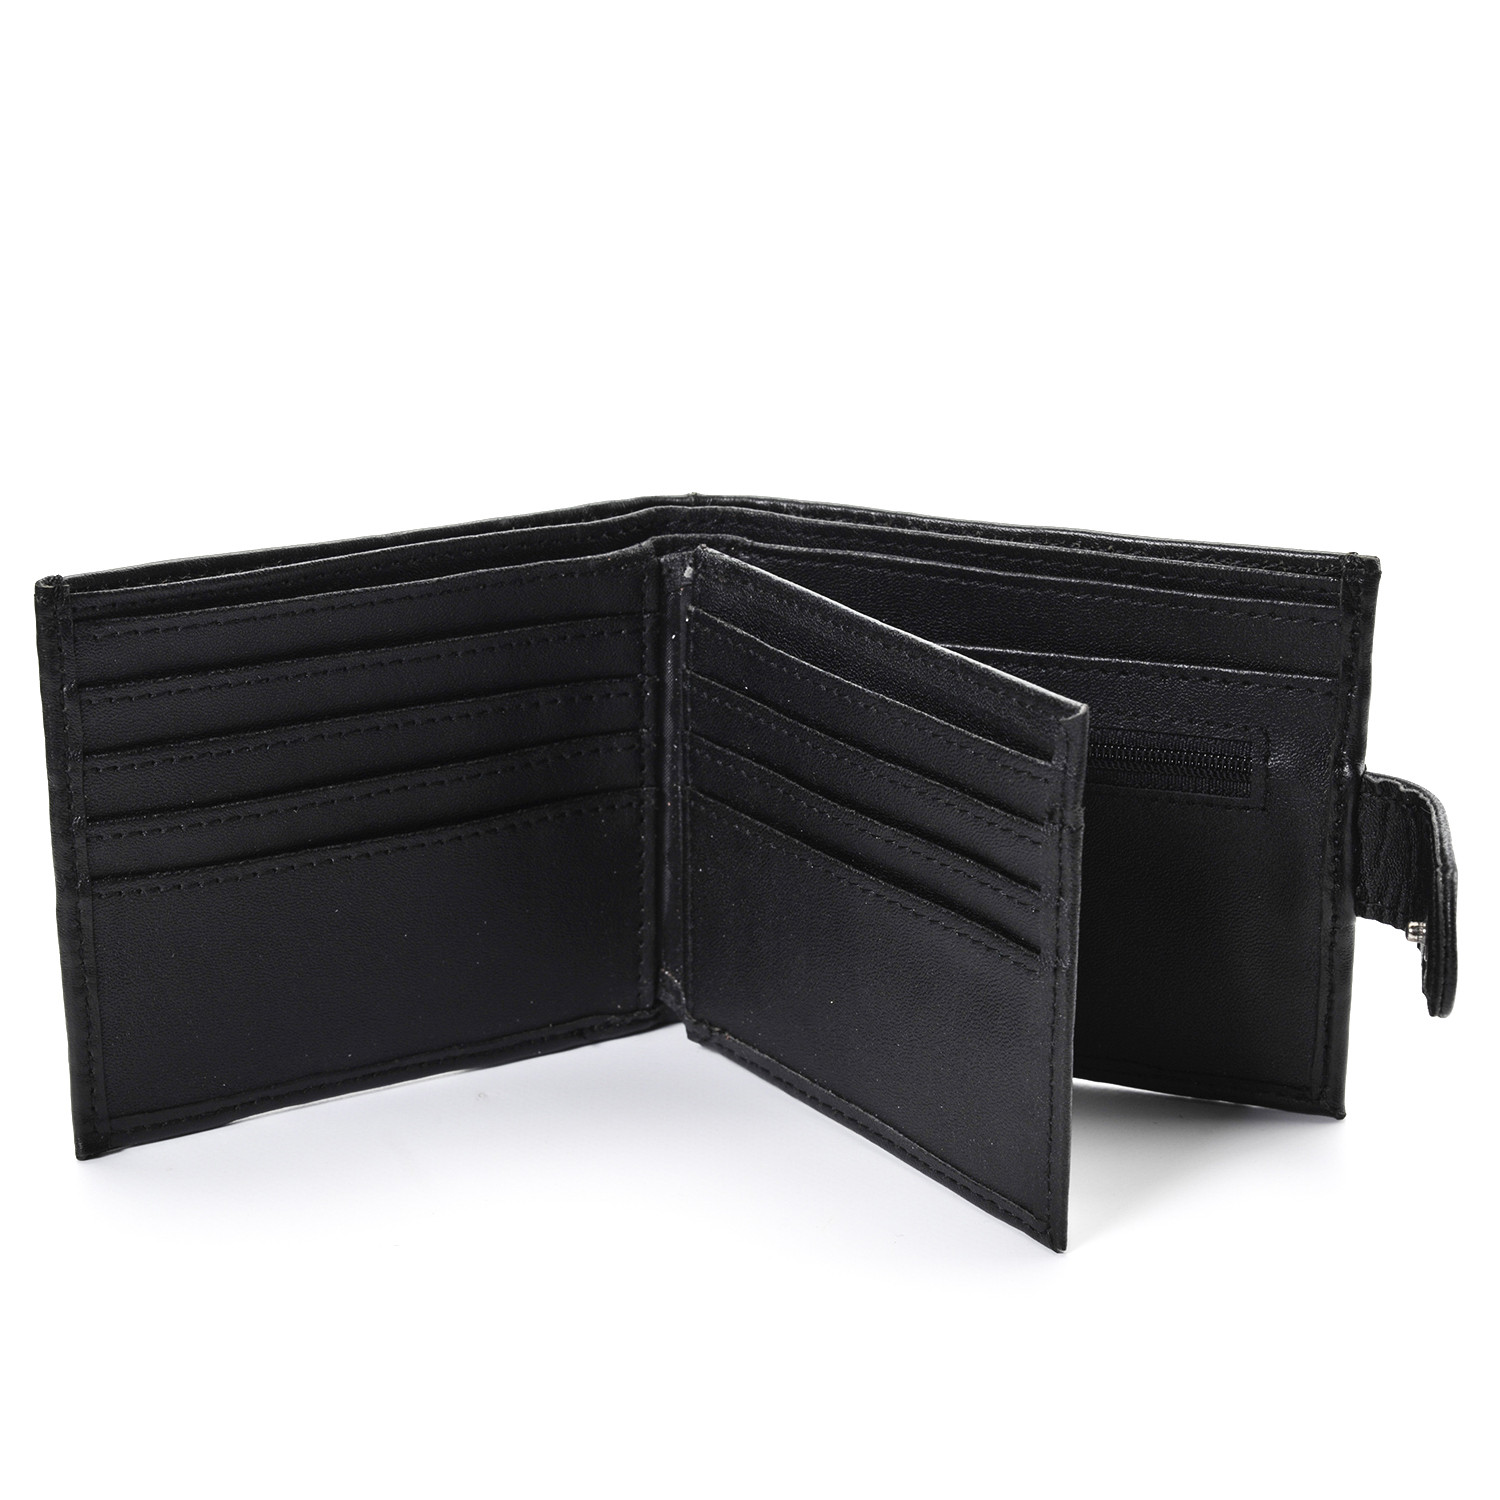 Black Leather Wallet - Black Image 2